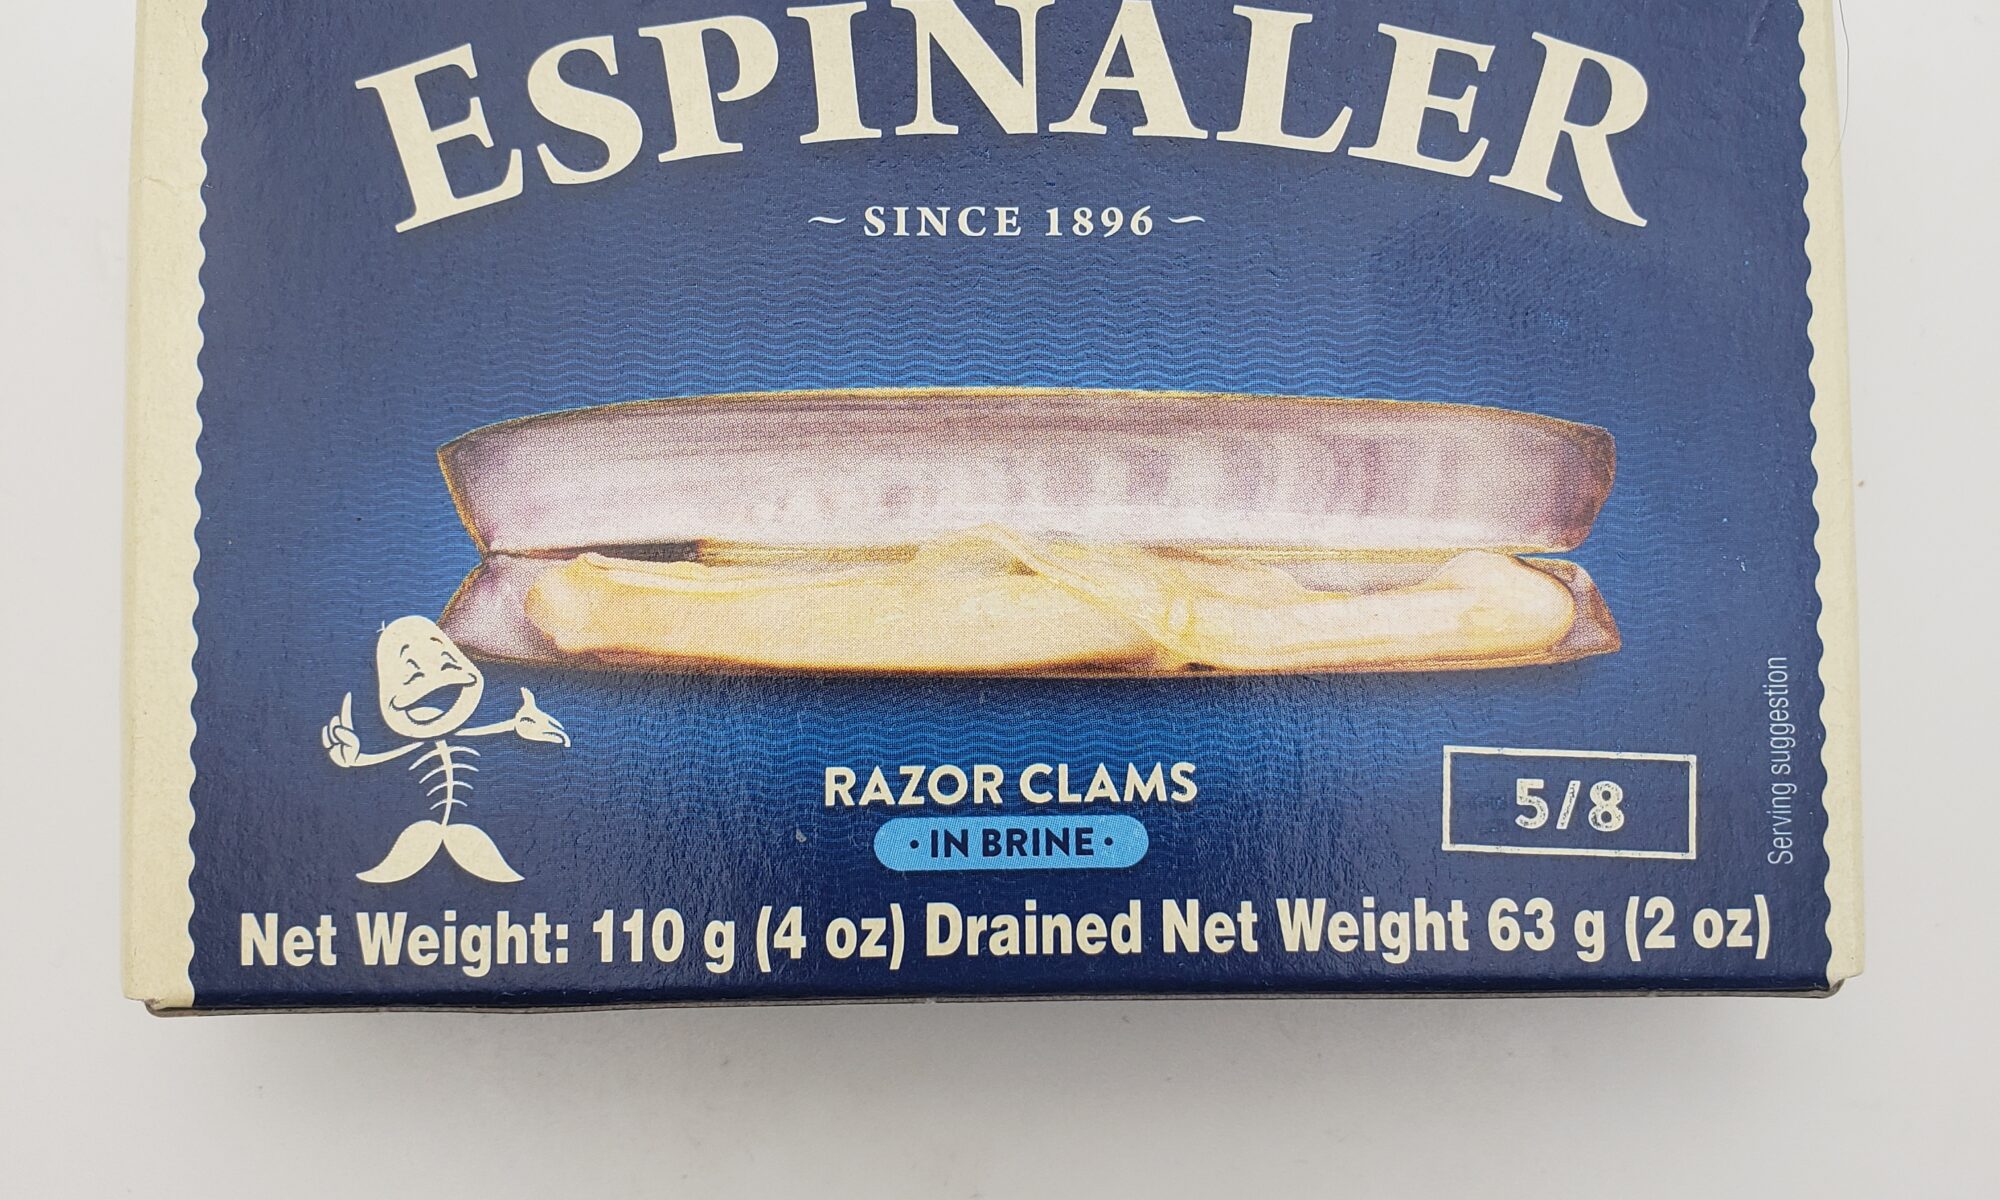 Image of Espinaler razor clams 5/8 box